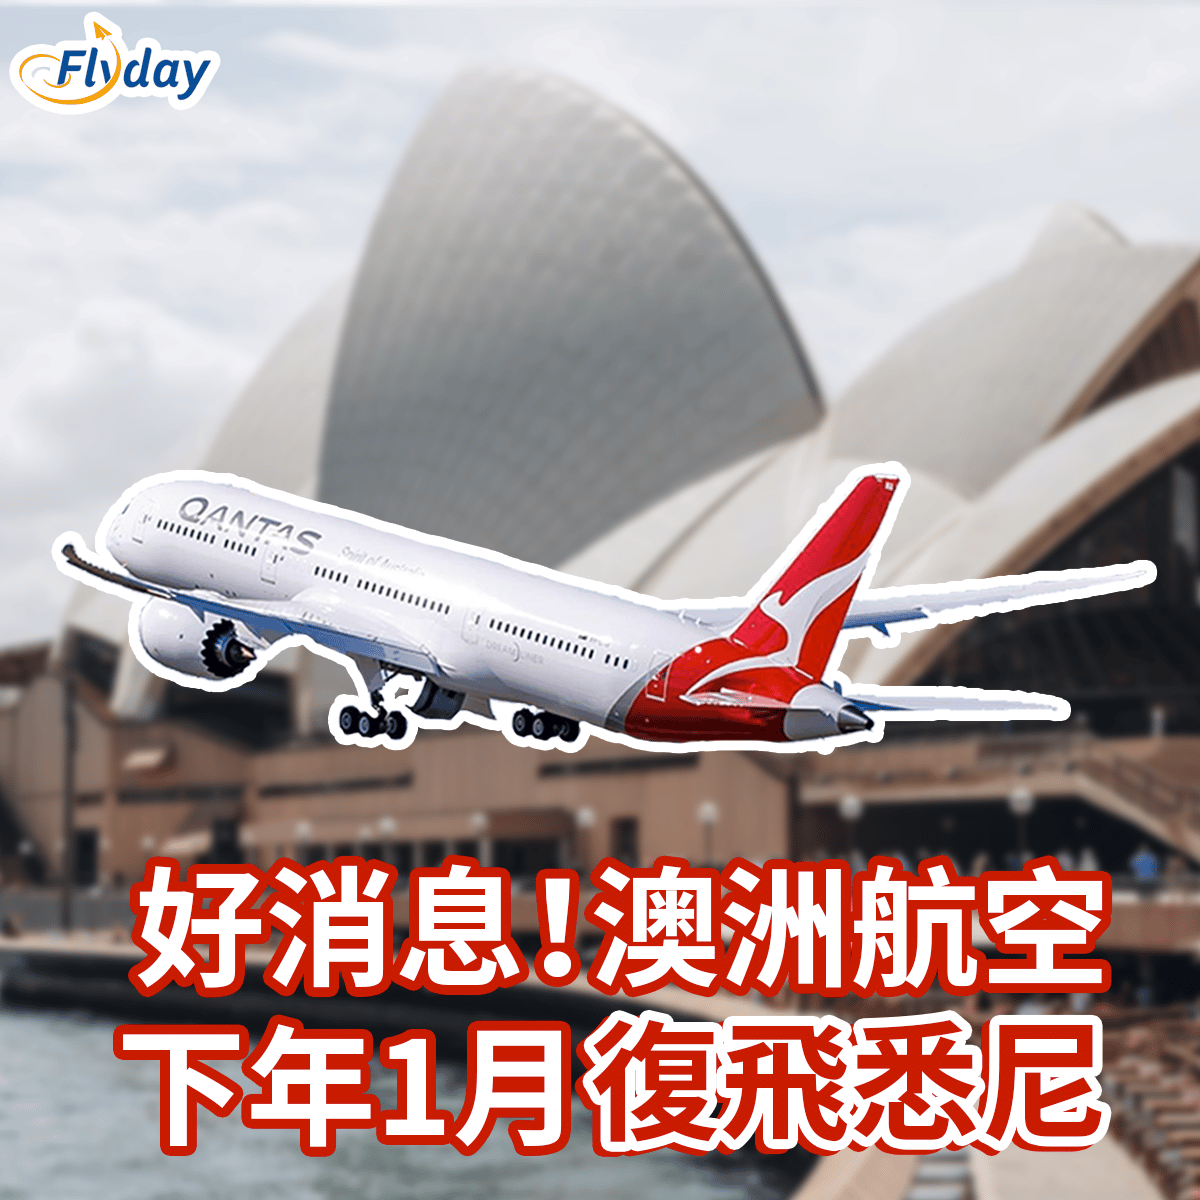 澳洲航空(Qantas)預告將於2023年1月30日起復飛來往香港及悉尼的航班